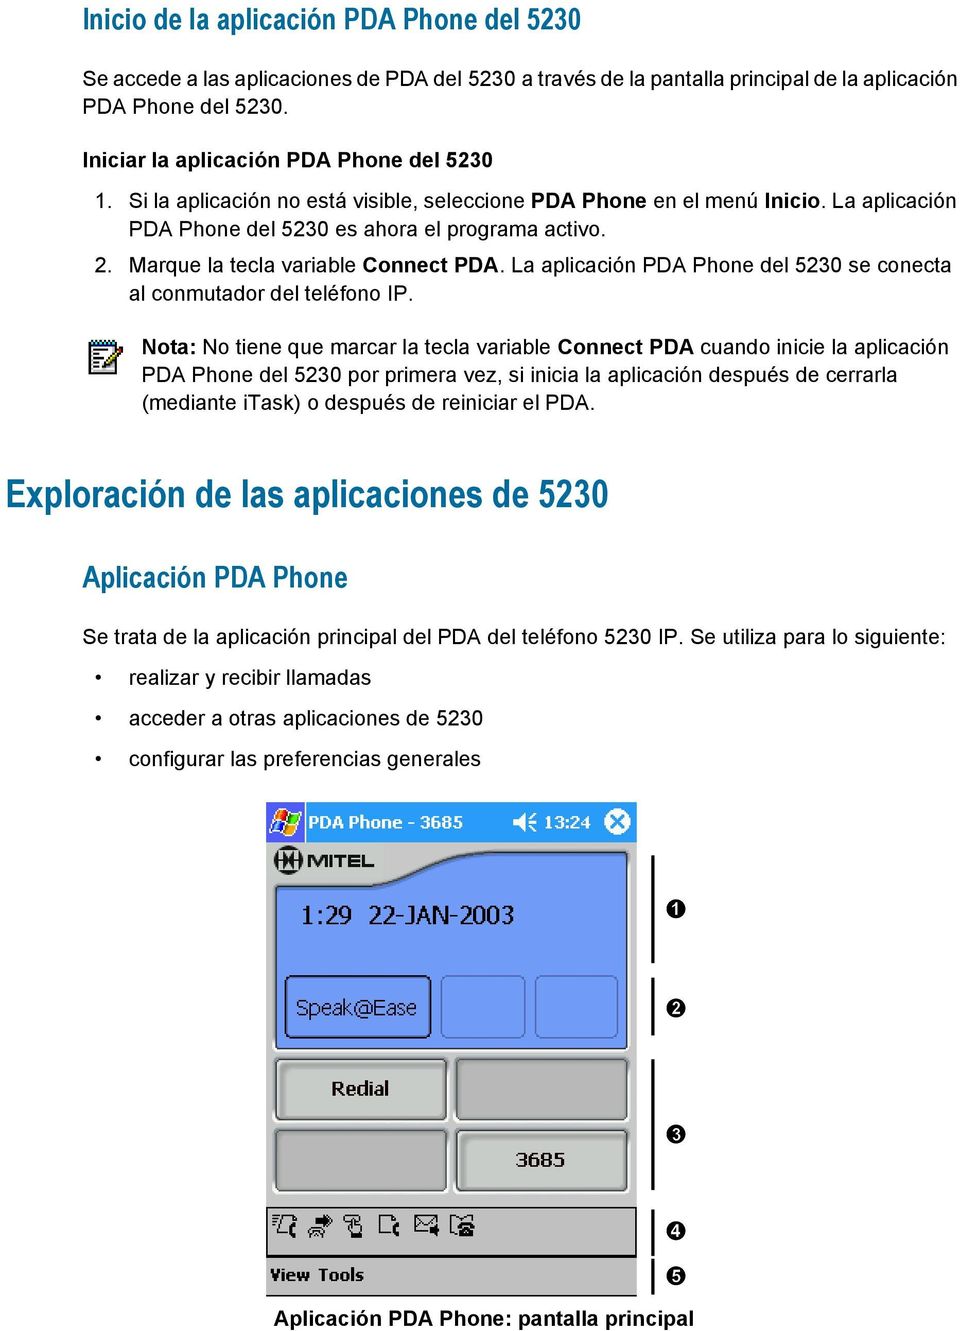 Marque la tecla variable Connect PDA. La aplicación PDA Phone del 5230 se conecta al conmutador del teléfono IP.